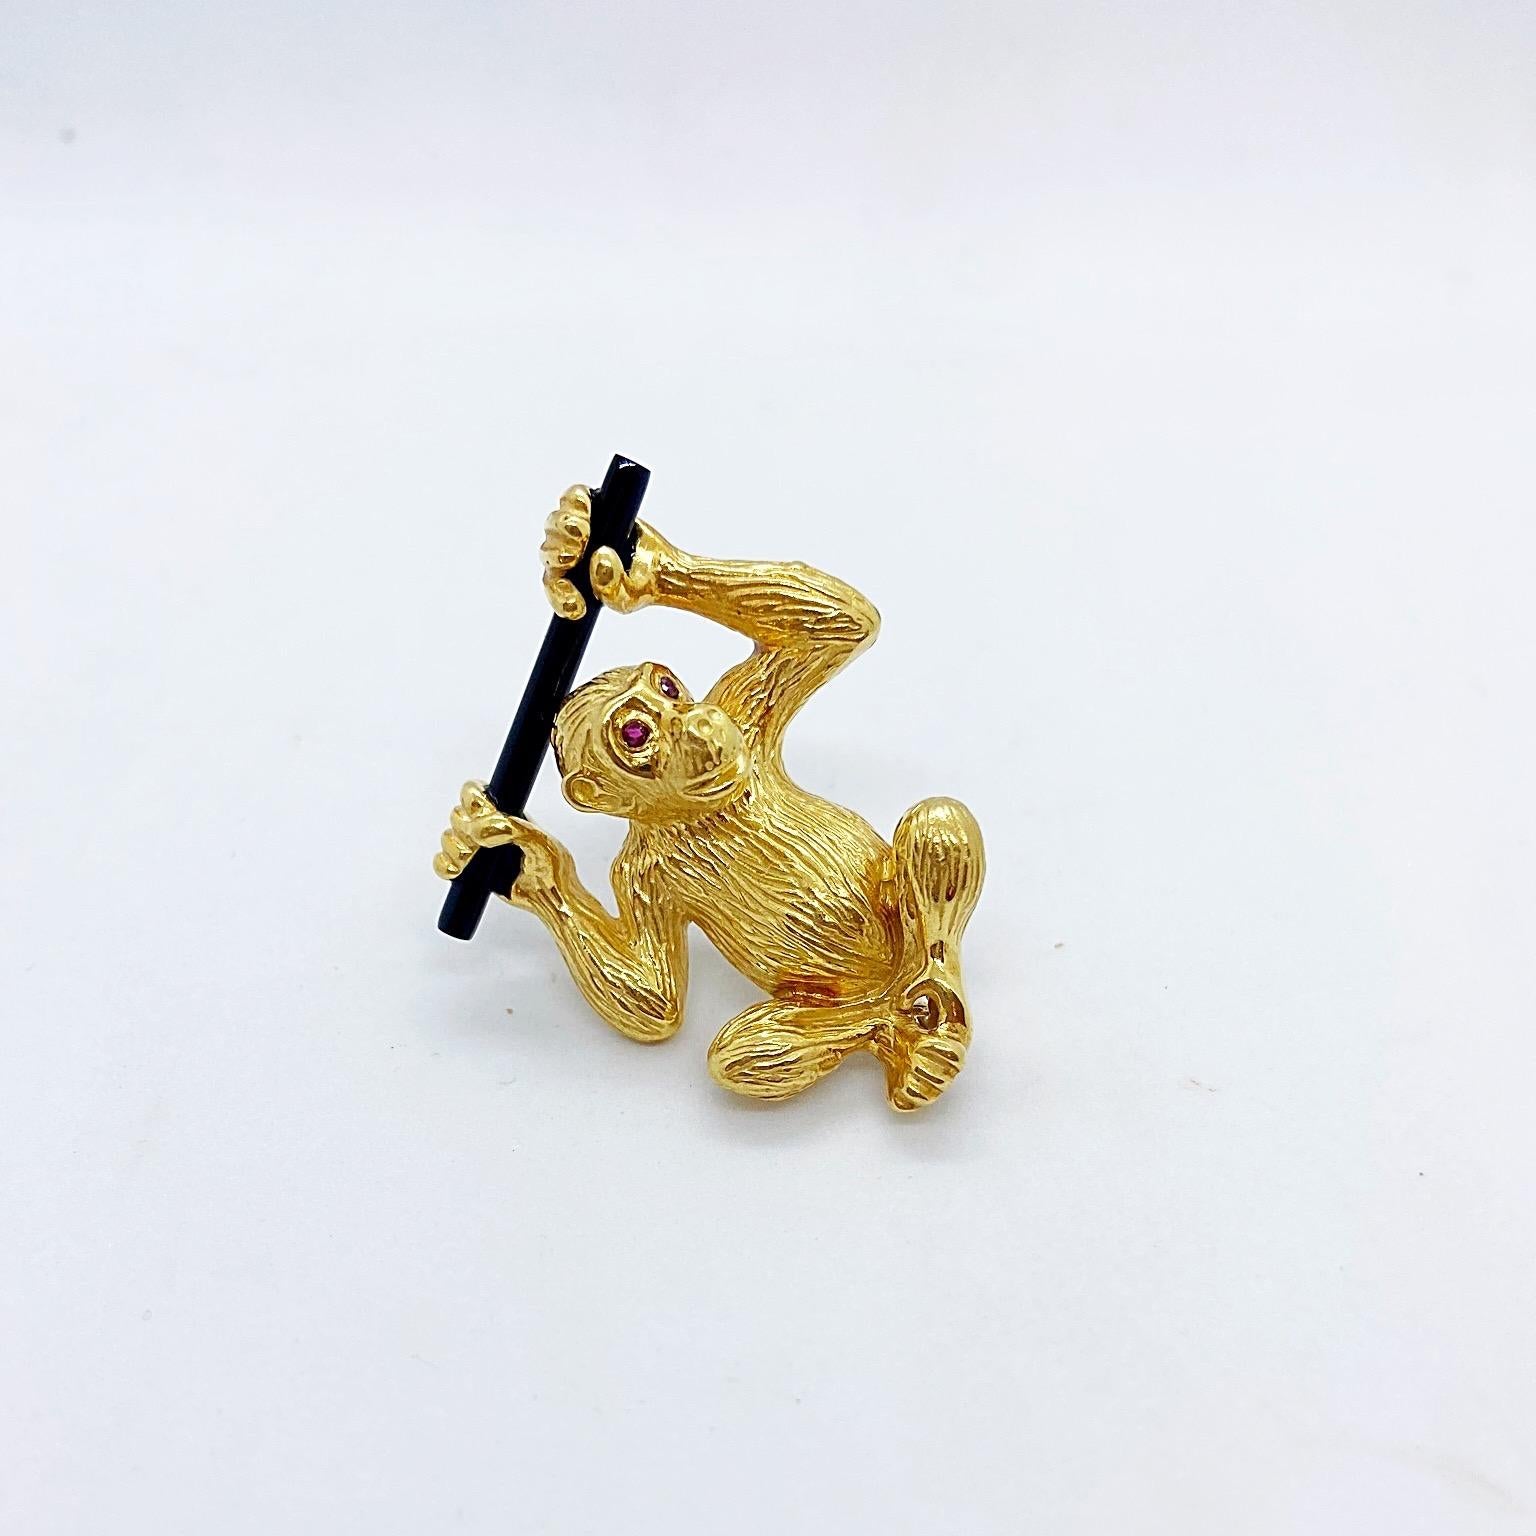 Un adorable singe en or jaune 18 carats, aux yeux de rubis, est suspendu à une branche d'onyx noir. La broche mesure 1,5